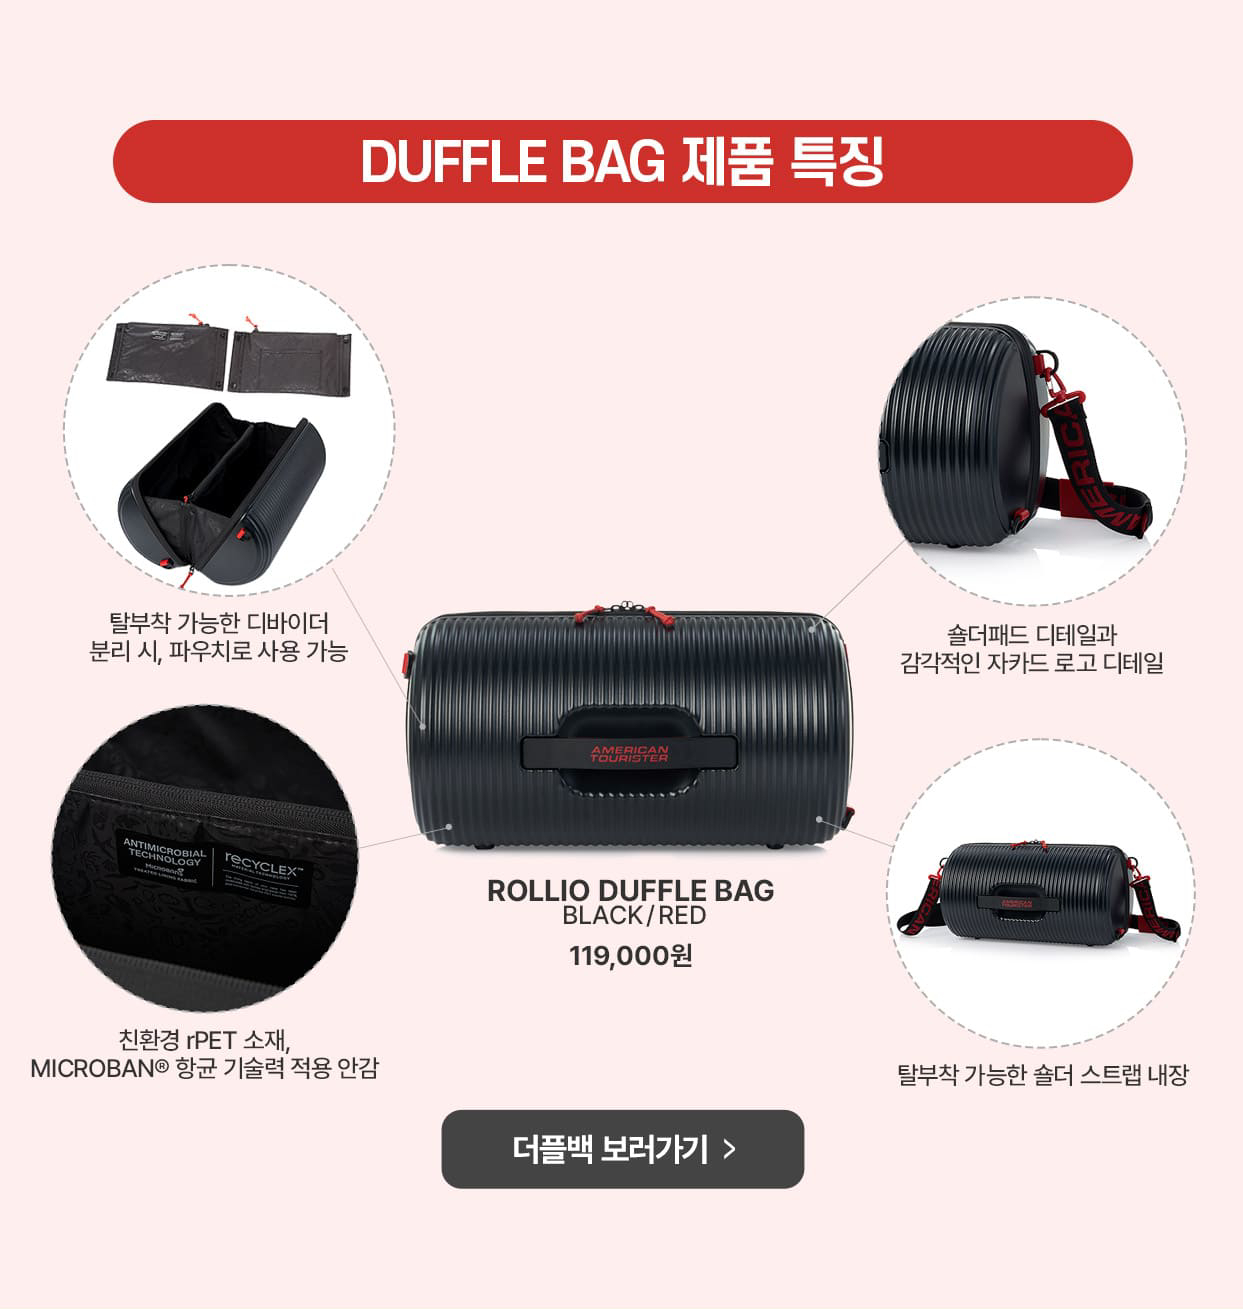 DUFFLE BAG 제품 특징